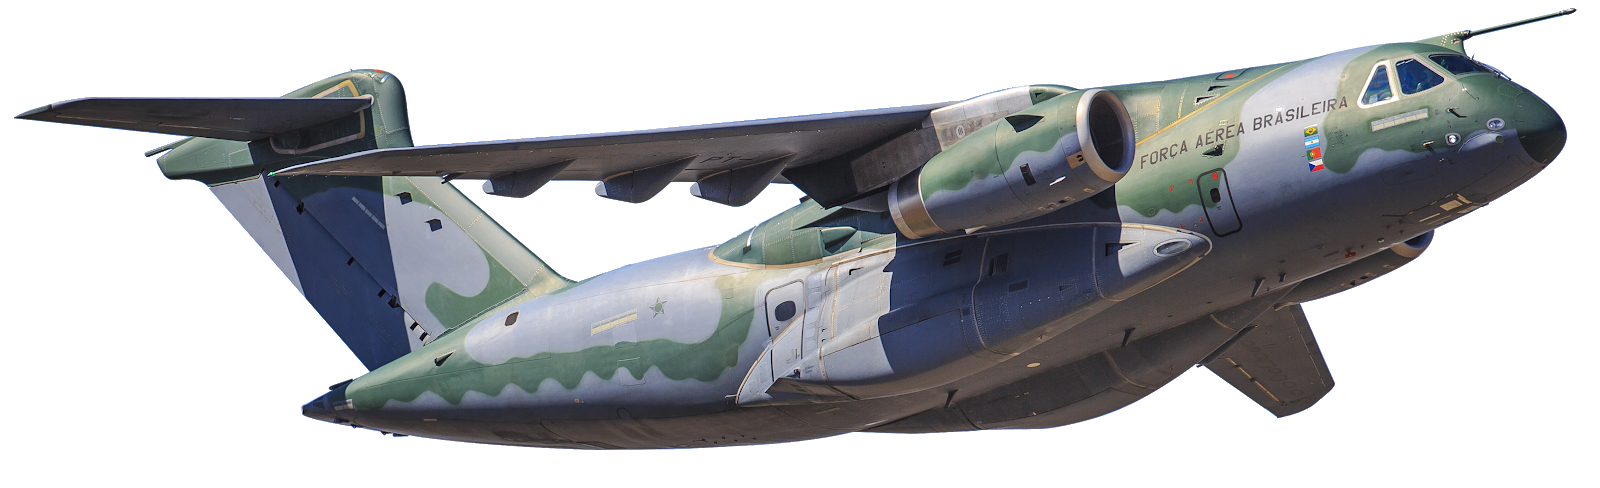 LRCA: KC-390: a nova aeronave multimissão da Força Aérea Brasileira (FAB)